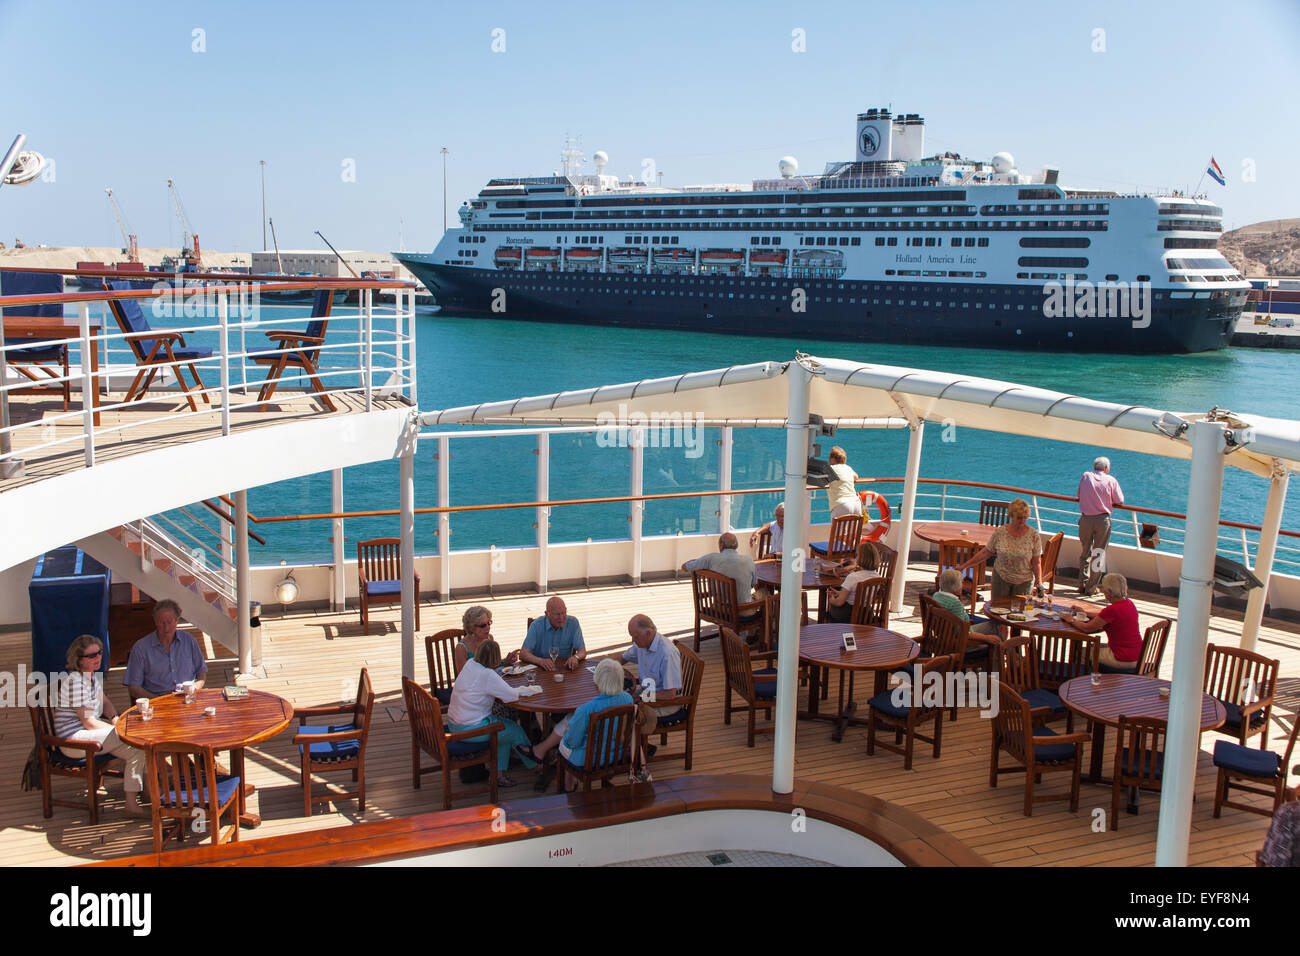 Cruise ship Rotterdam, Salalah Port; Salalah, Dhofar, Oman Stock Photo